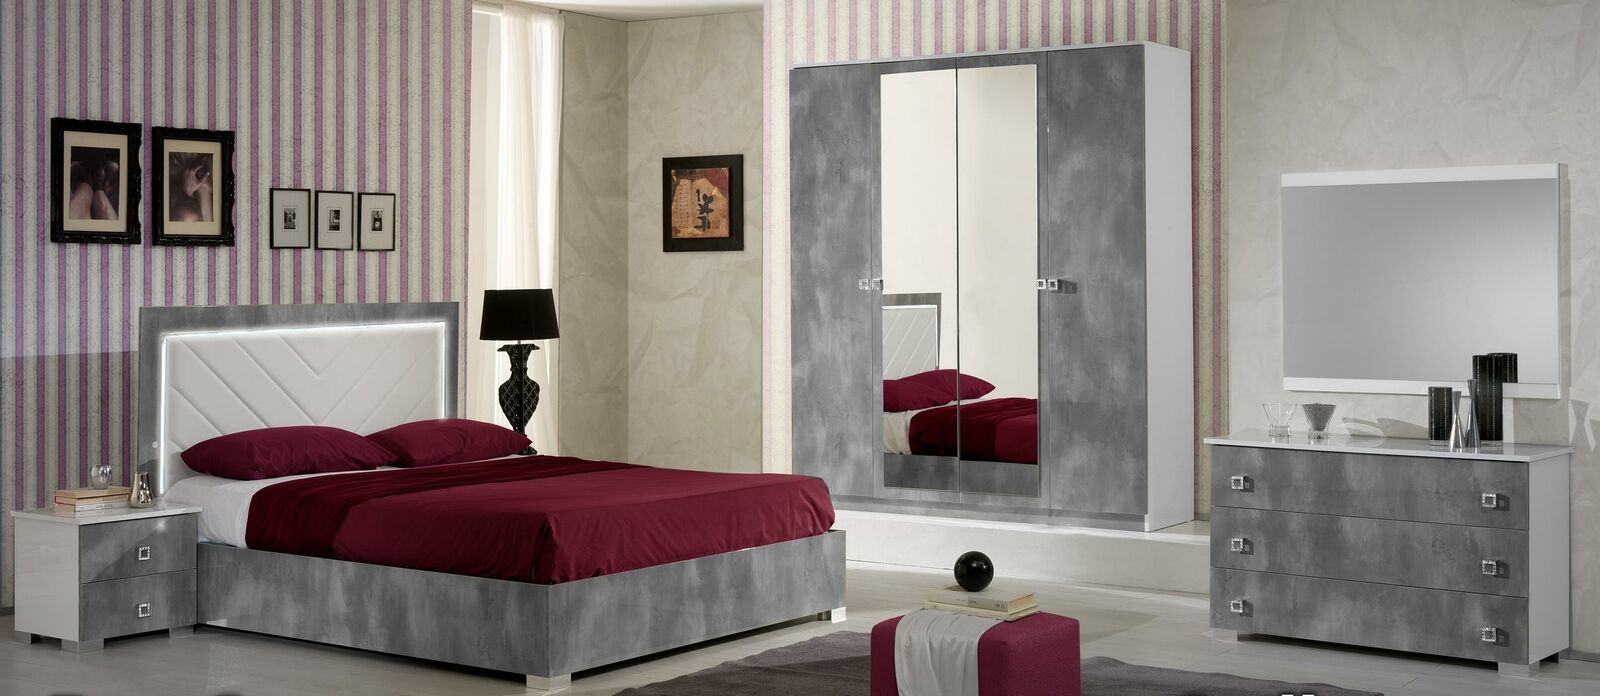 Schlafzimmer Italienische Möbel Set Luxus 6tlg. Bett Betten Schrank Kommode